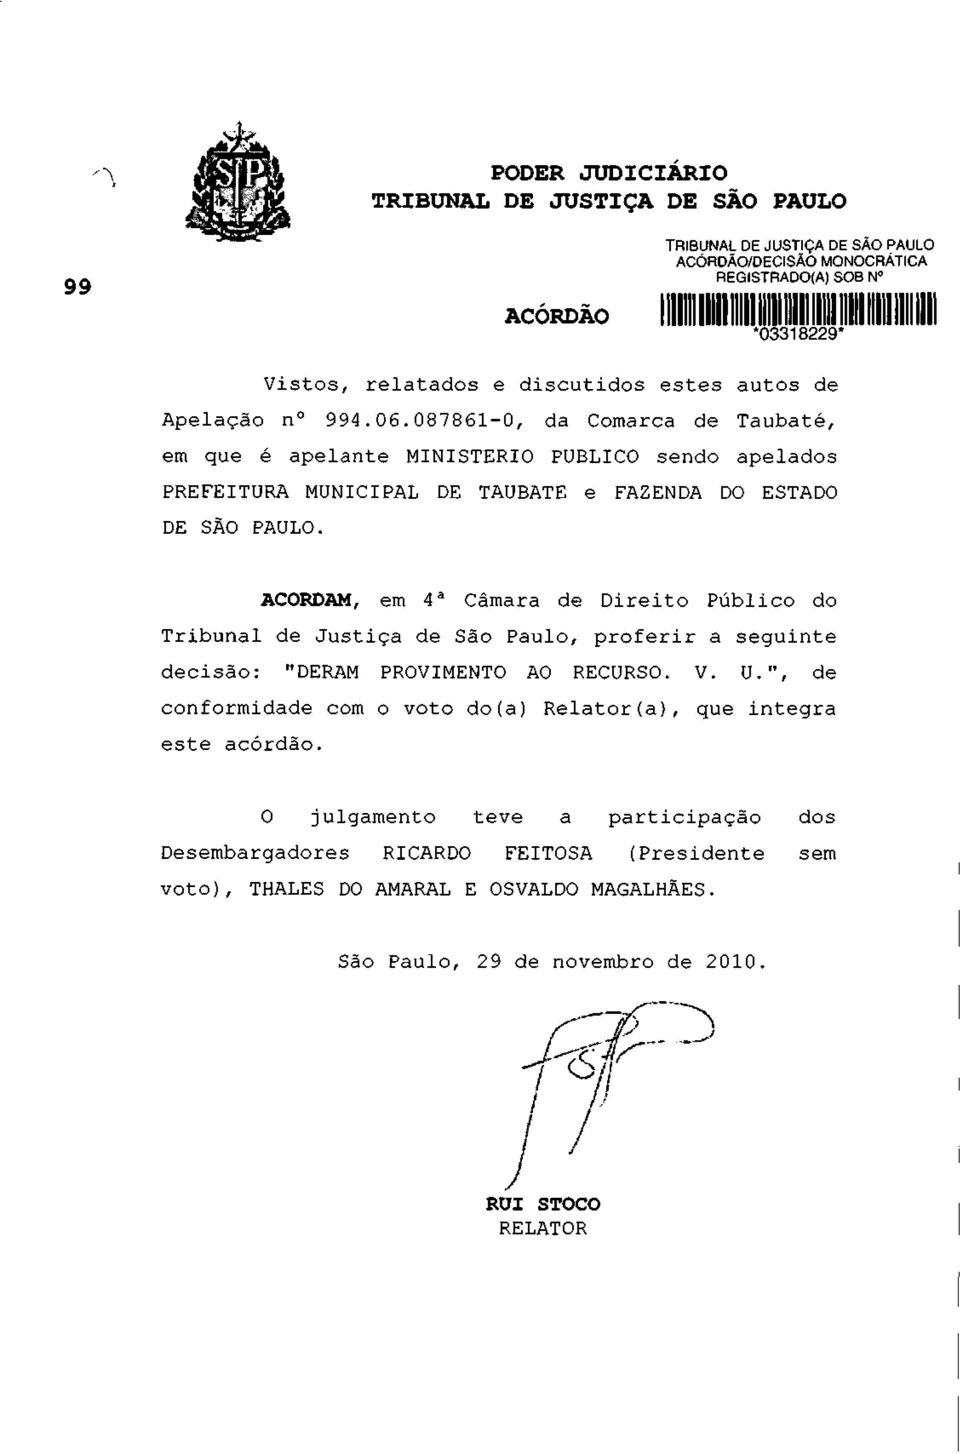 087861-0, da Comarca de Taubaté, em que é apelante MINISTÉRIO PUBLICO sendo apelados PREFEITURA MUNICIPAL DE TAUBATE e FAZENDA DO ESTADO DE SÃO PAULO.